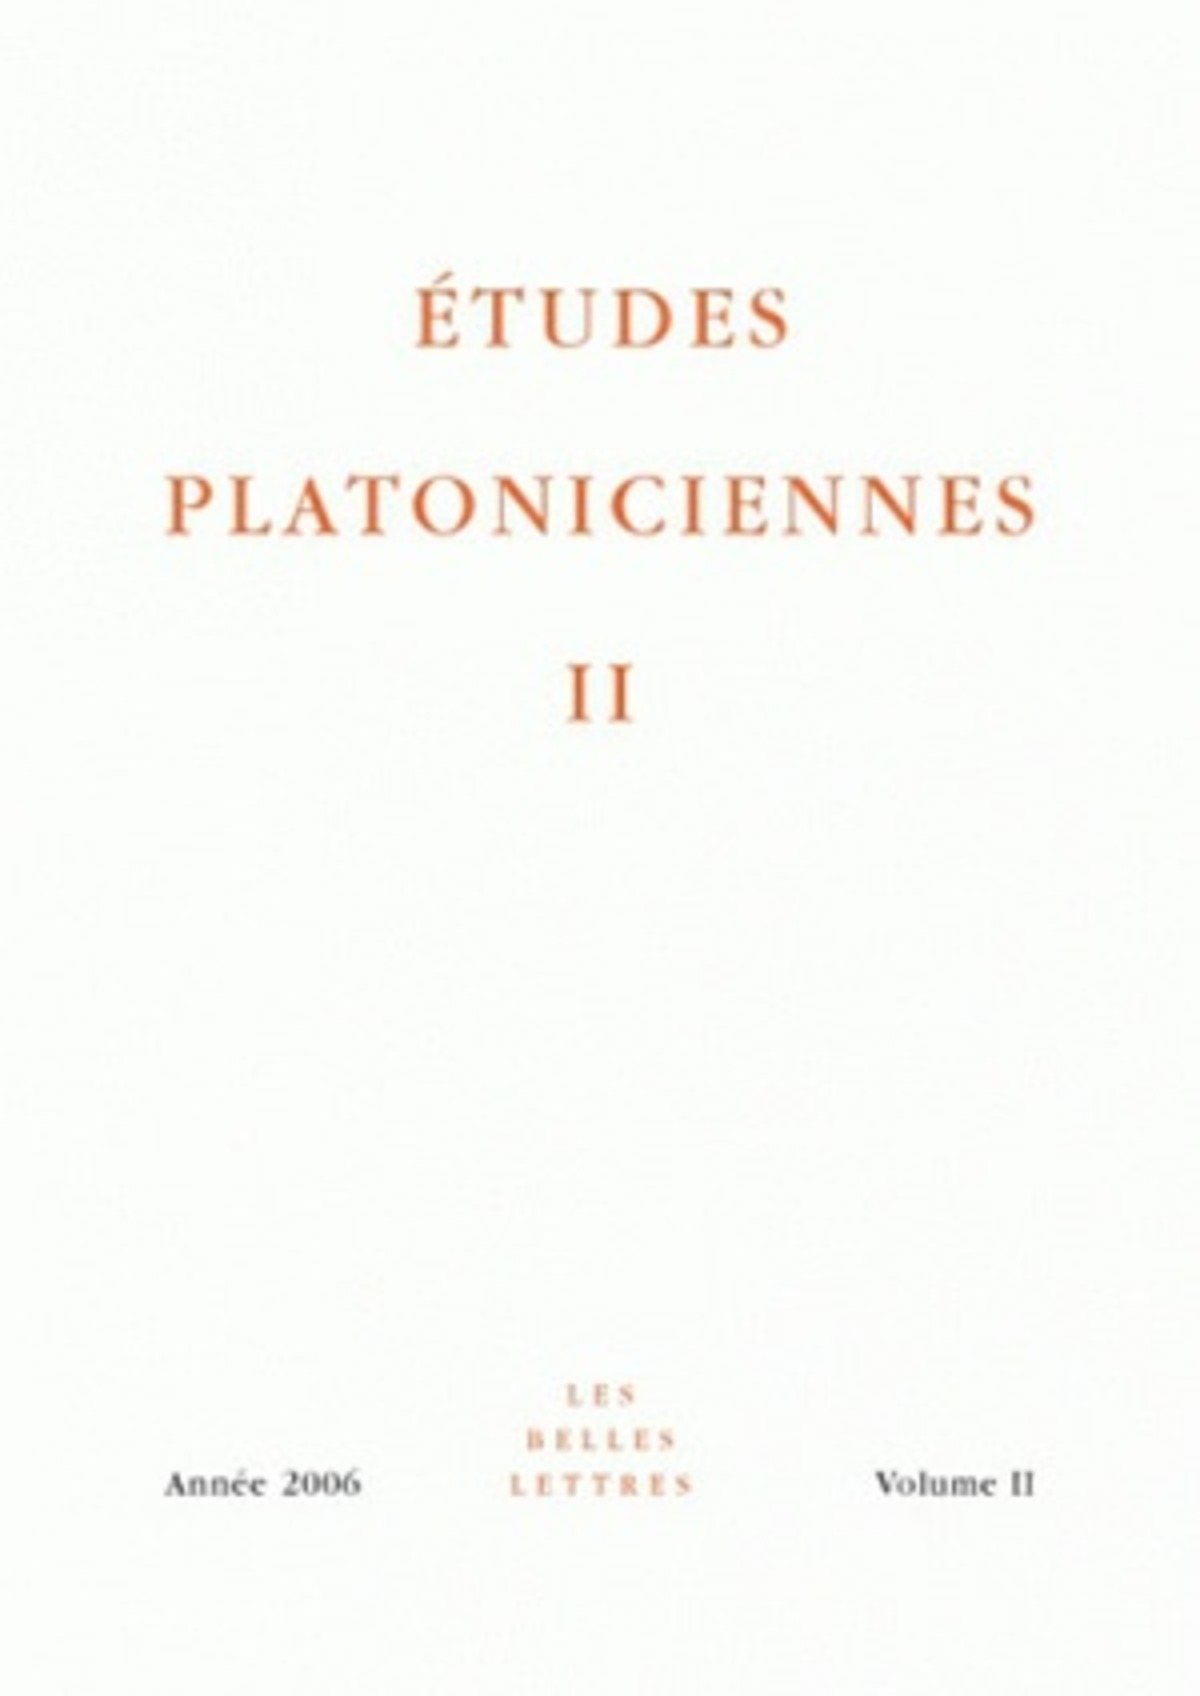 Études platoniciennes II